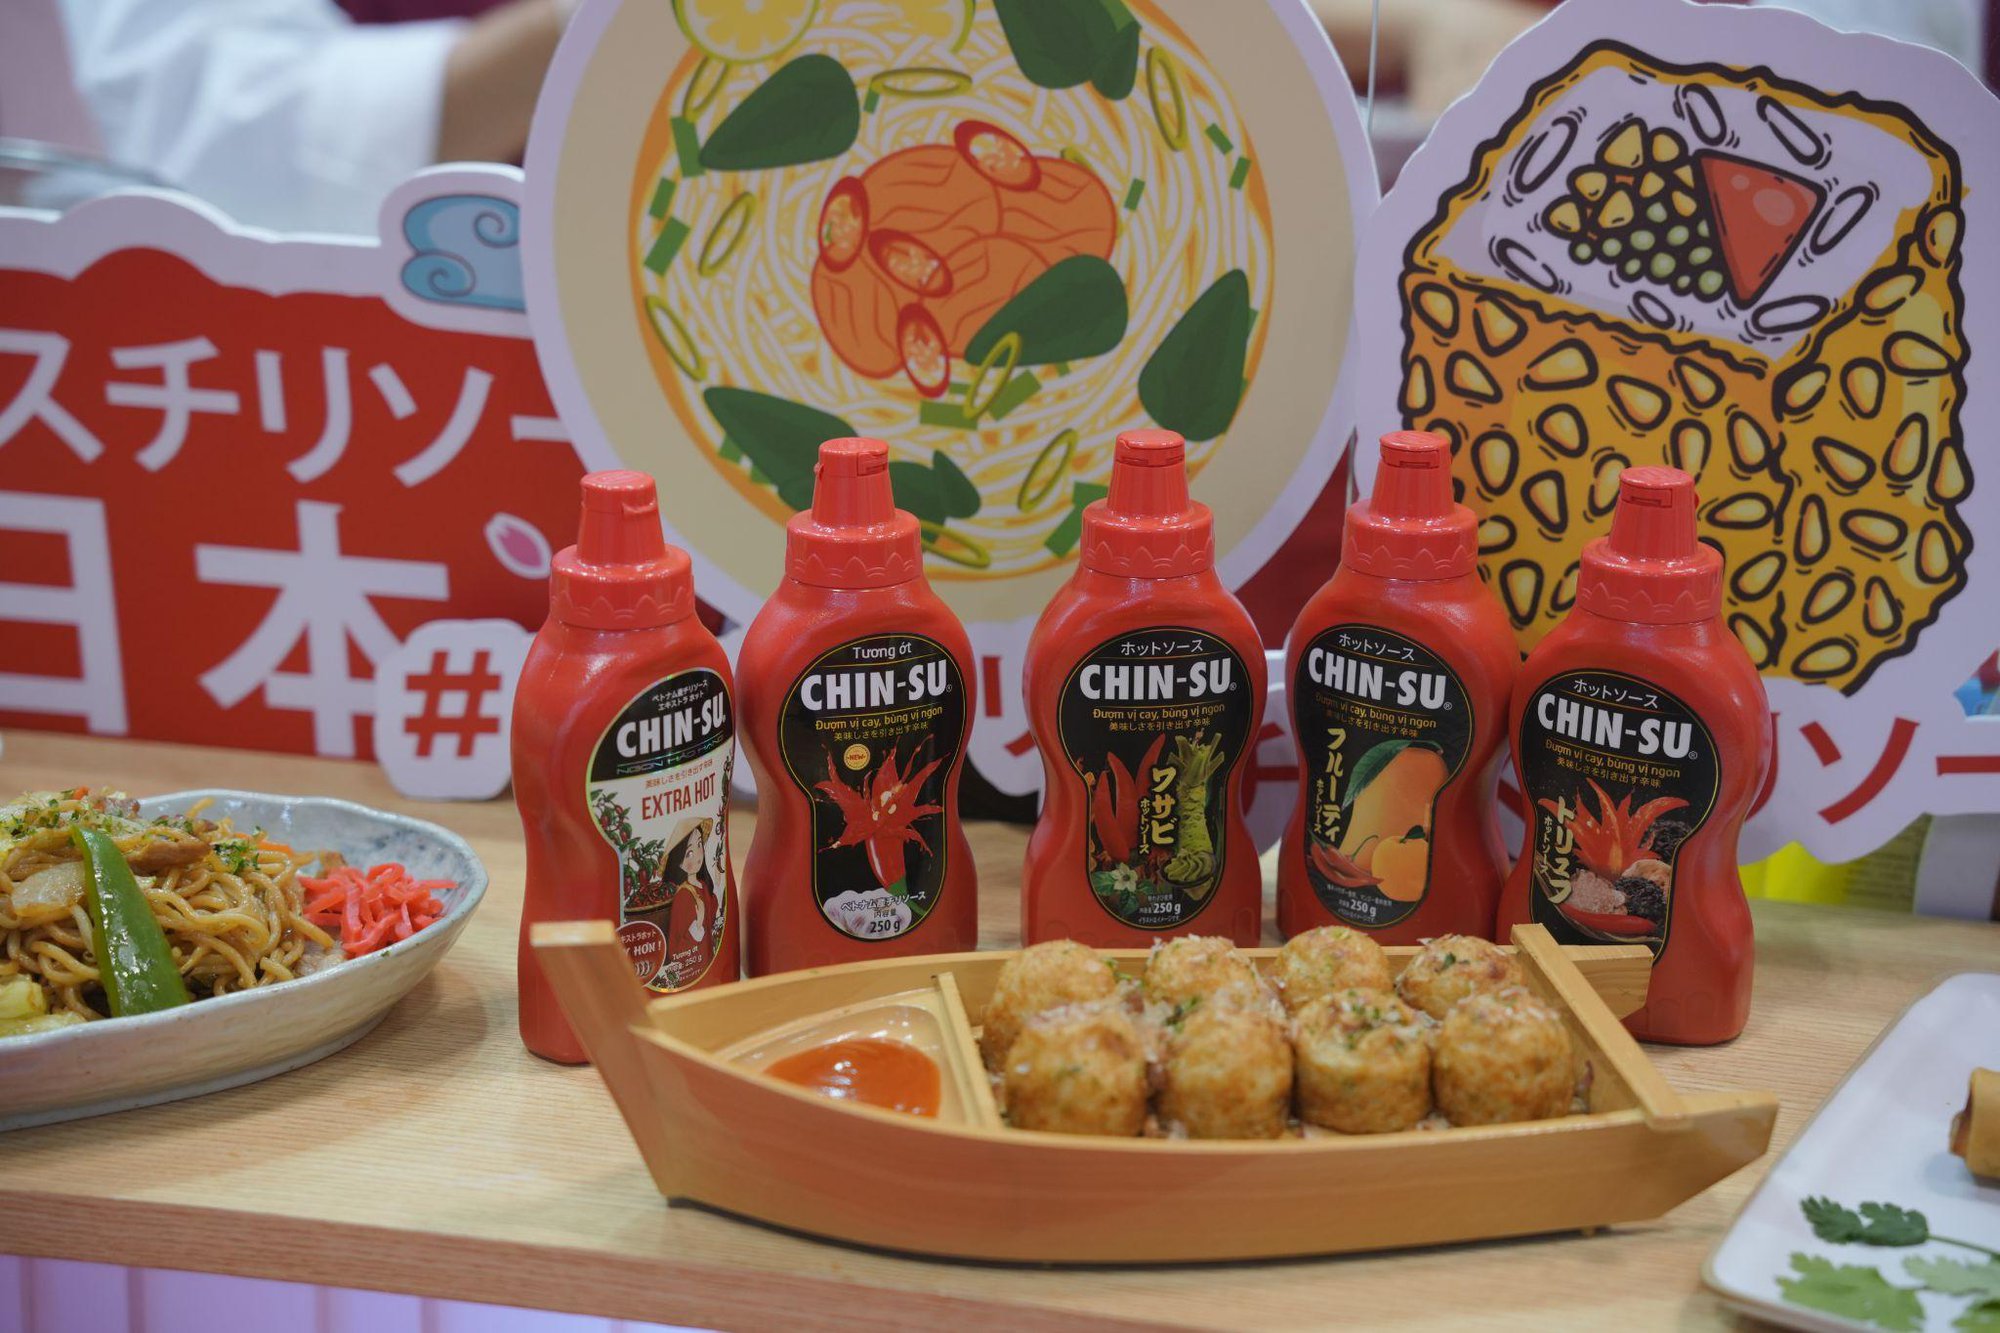 Tương ớt Chin-su gây ấn tượng mạnh tại Nhật Bản, ra mắt tận 5 hương vị mới - Ảnh 2.